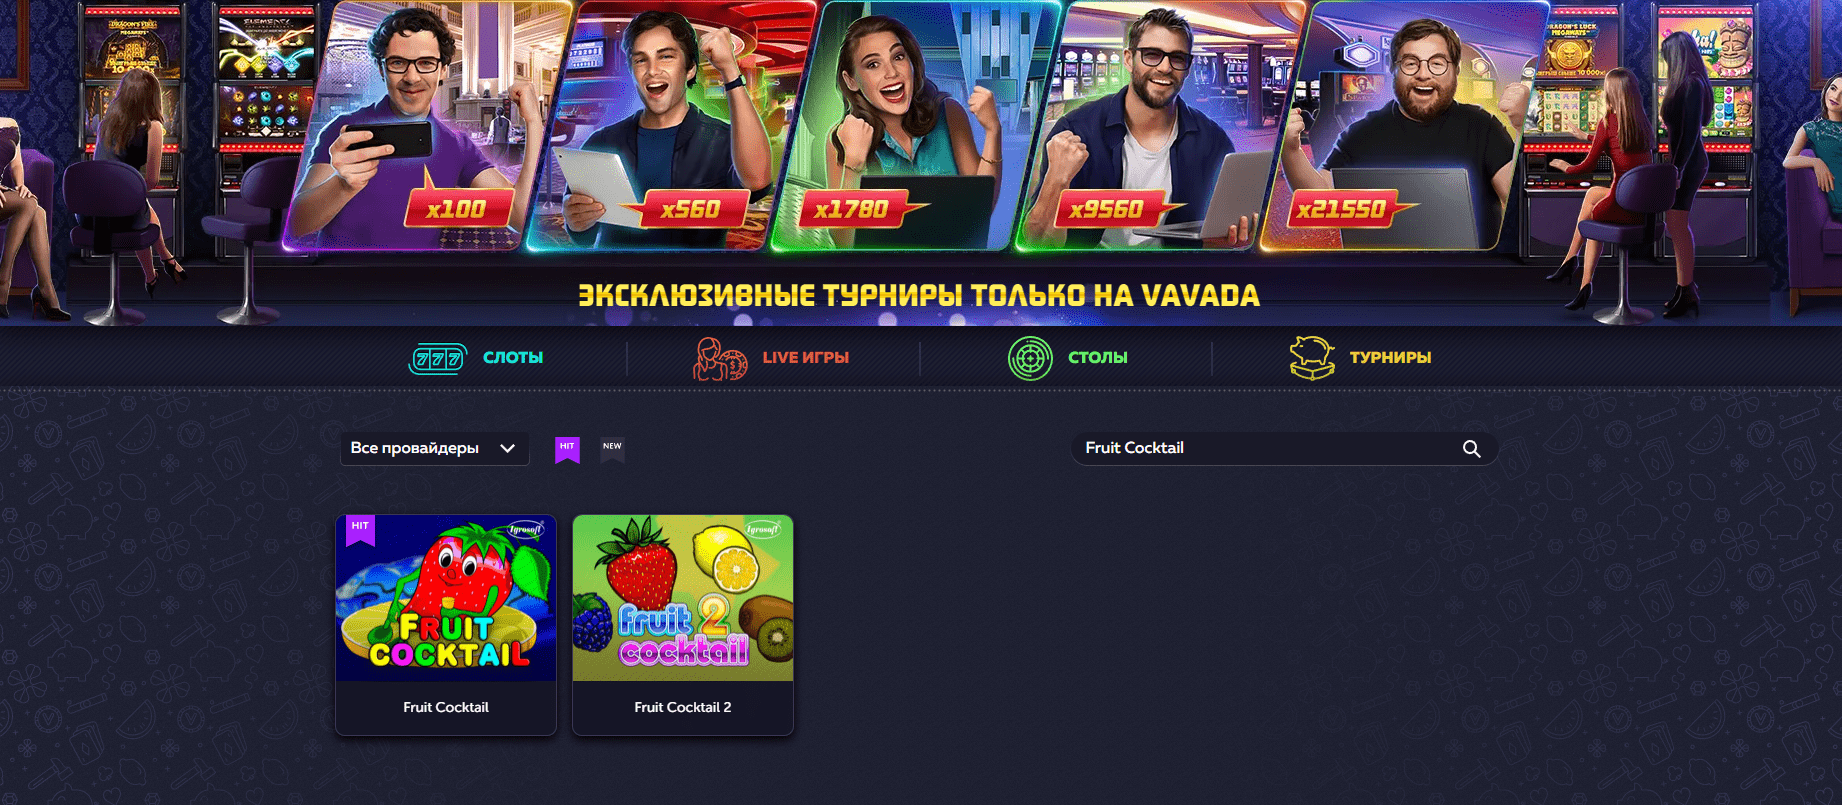 официальный сайт казино Vavada